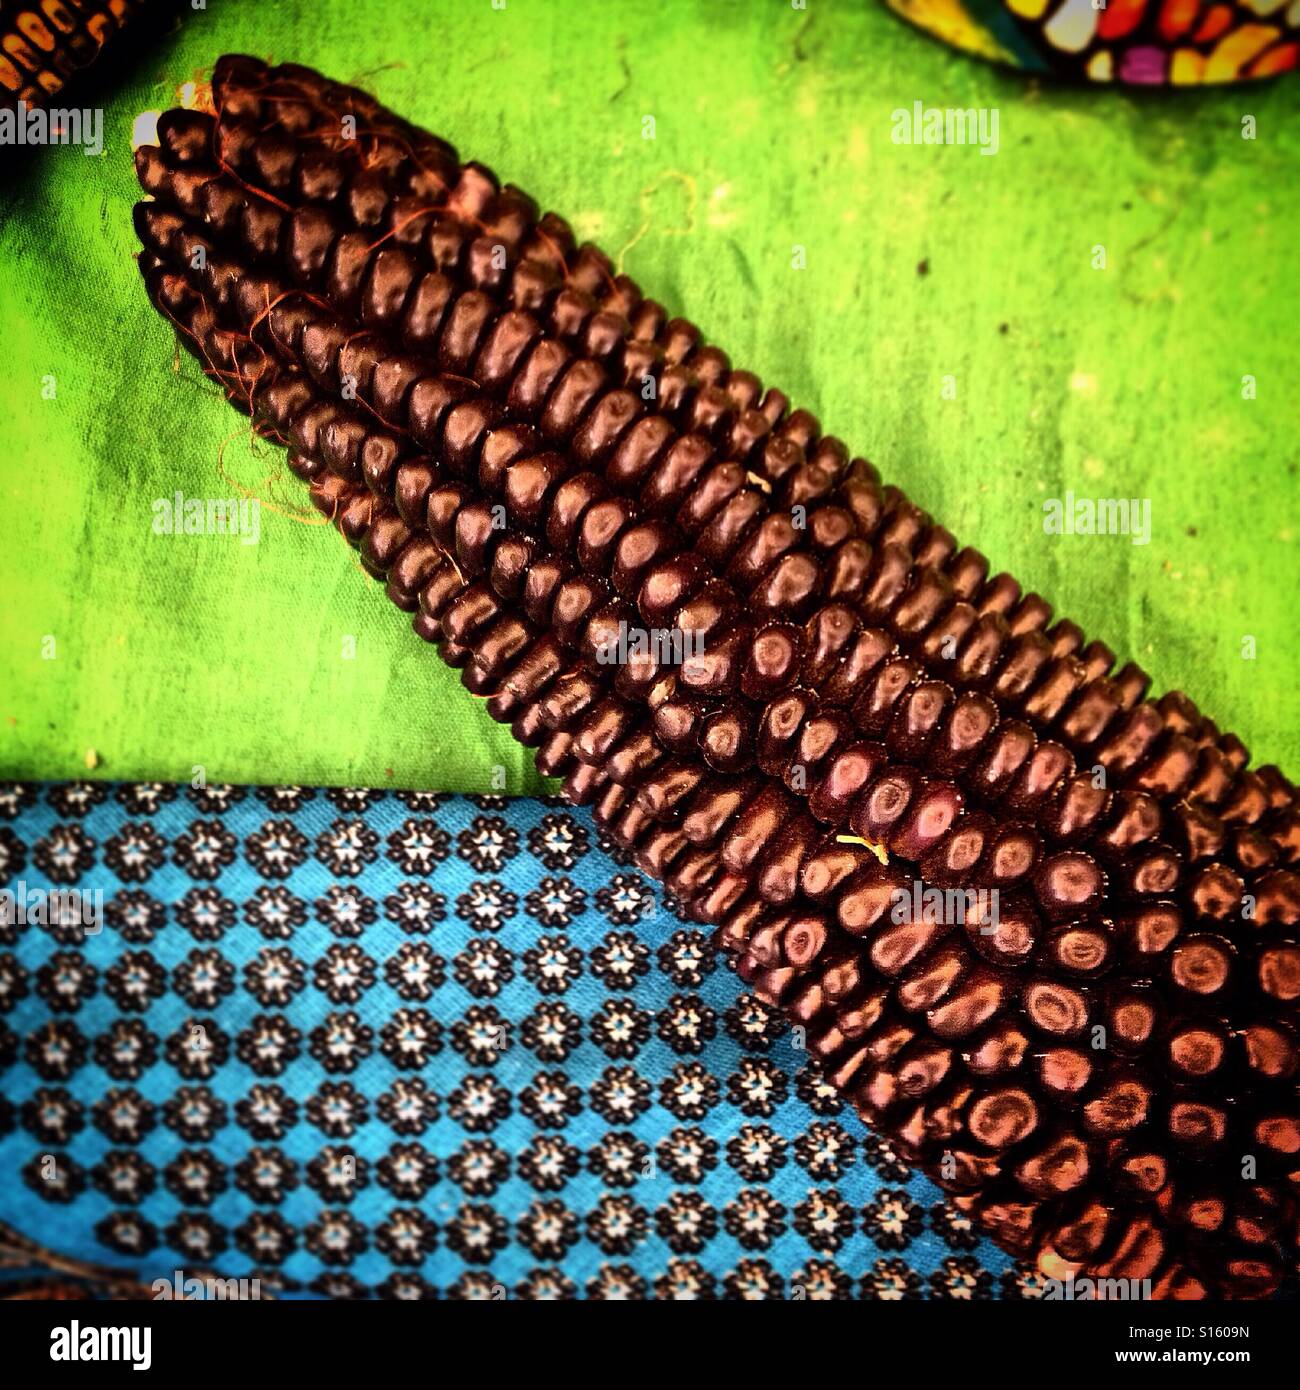 A brown corn cob in Foro Tianguis Alternativo in Mexico City, Mexico Stock Photo